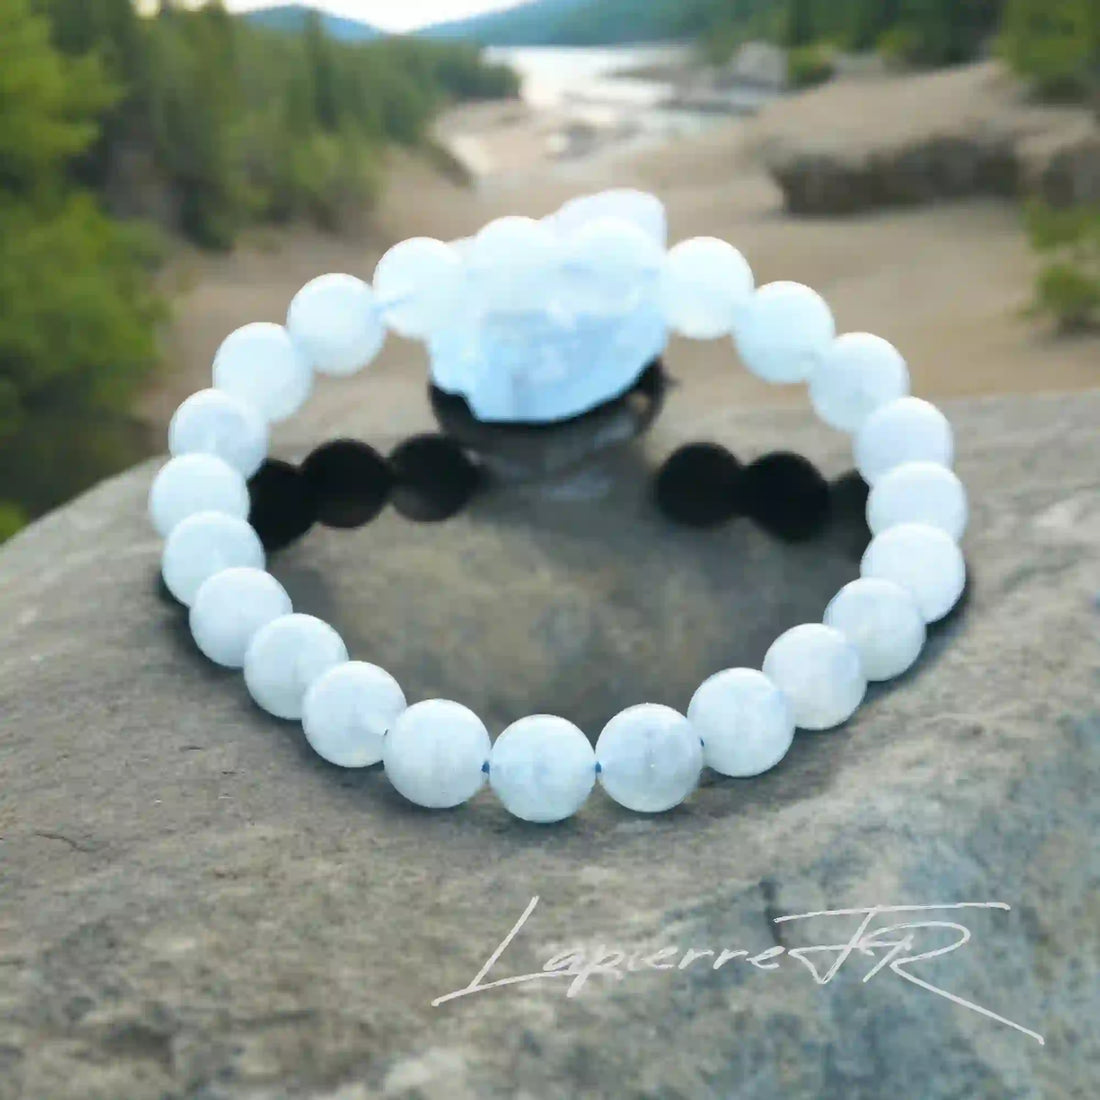 Bracelet en Aigue-Marine avec perles naturelles. Favorise tranquillité, sérénité et paix intérieure. Ajustable pour femmes et hommes.